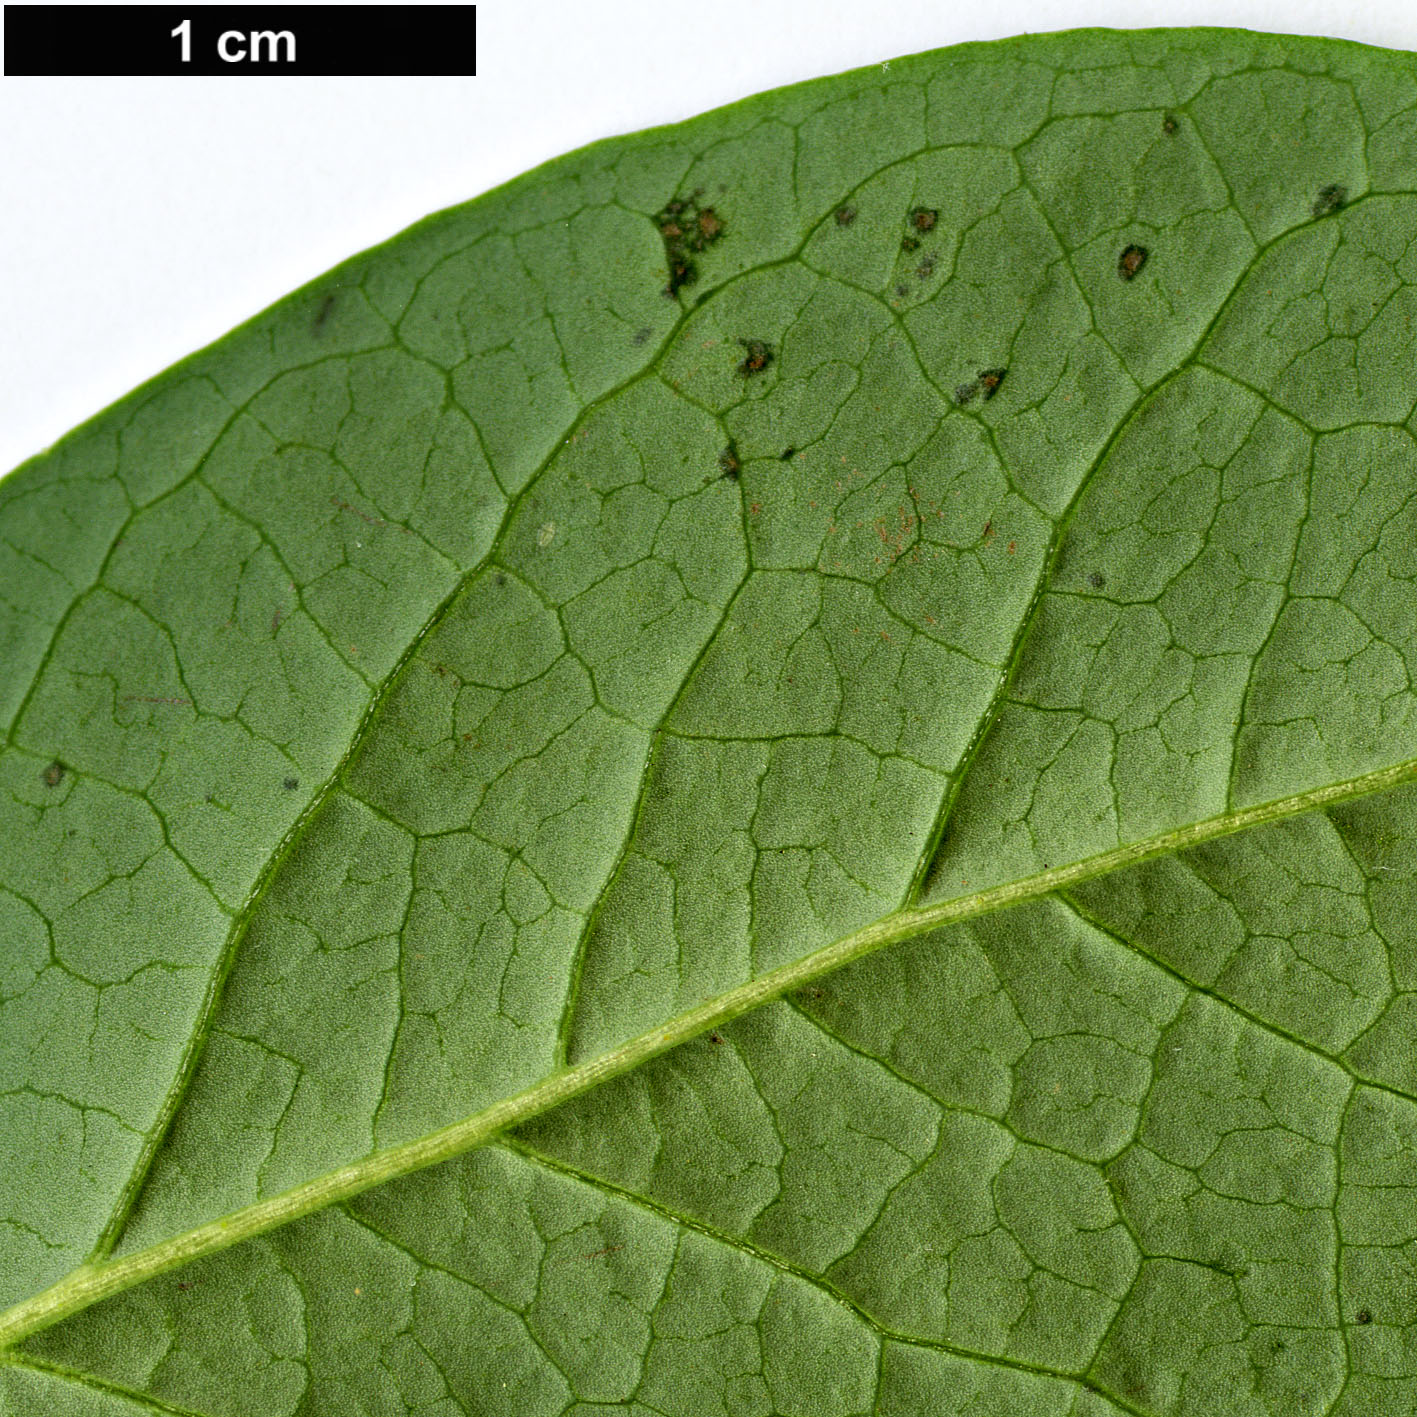 High resolution image: Family: Ericaceae - Genus: Vaccinium - Taxon: corymbosum